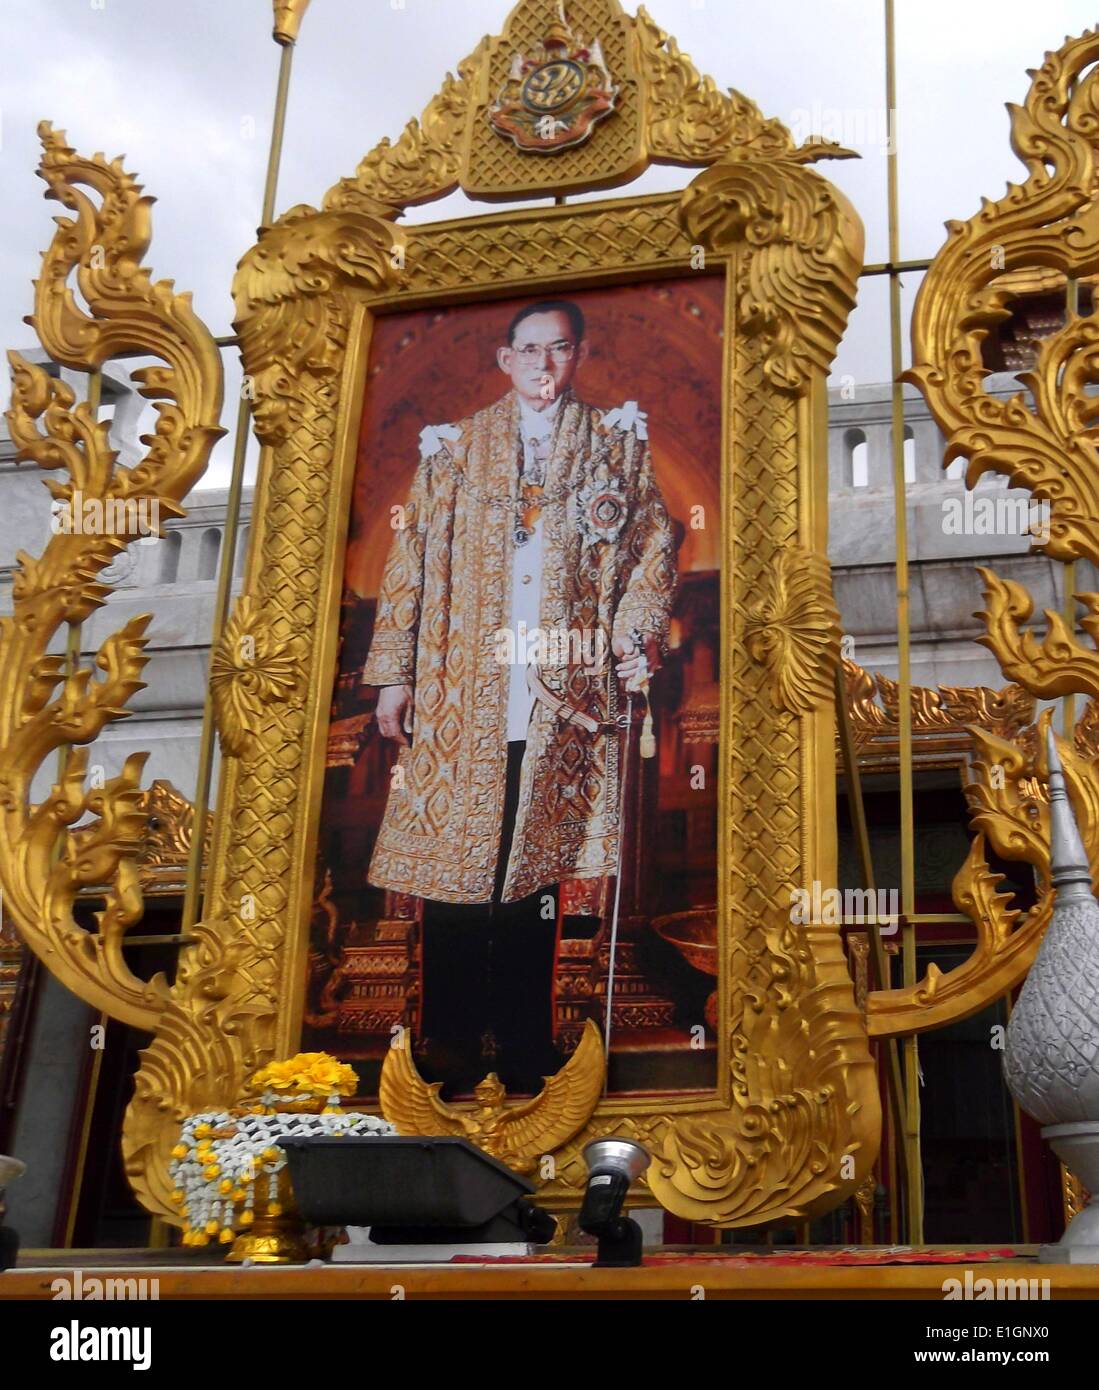 Bhumibol Adulyadej né le 5 décembre 1927) est le Roi de Thaïlande. Connu sous le nom de Rama IX. Ayant régné depuis le 9 juin 1946, il est le plus ancien monarque régnant dans l'histoire Thaïe Banque D'Images